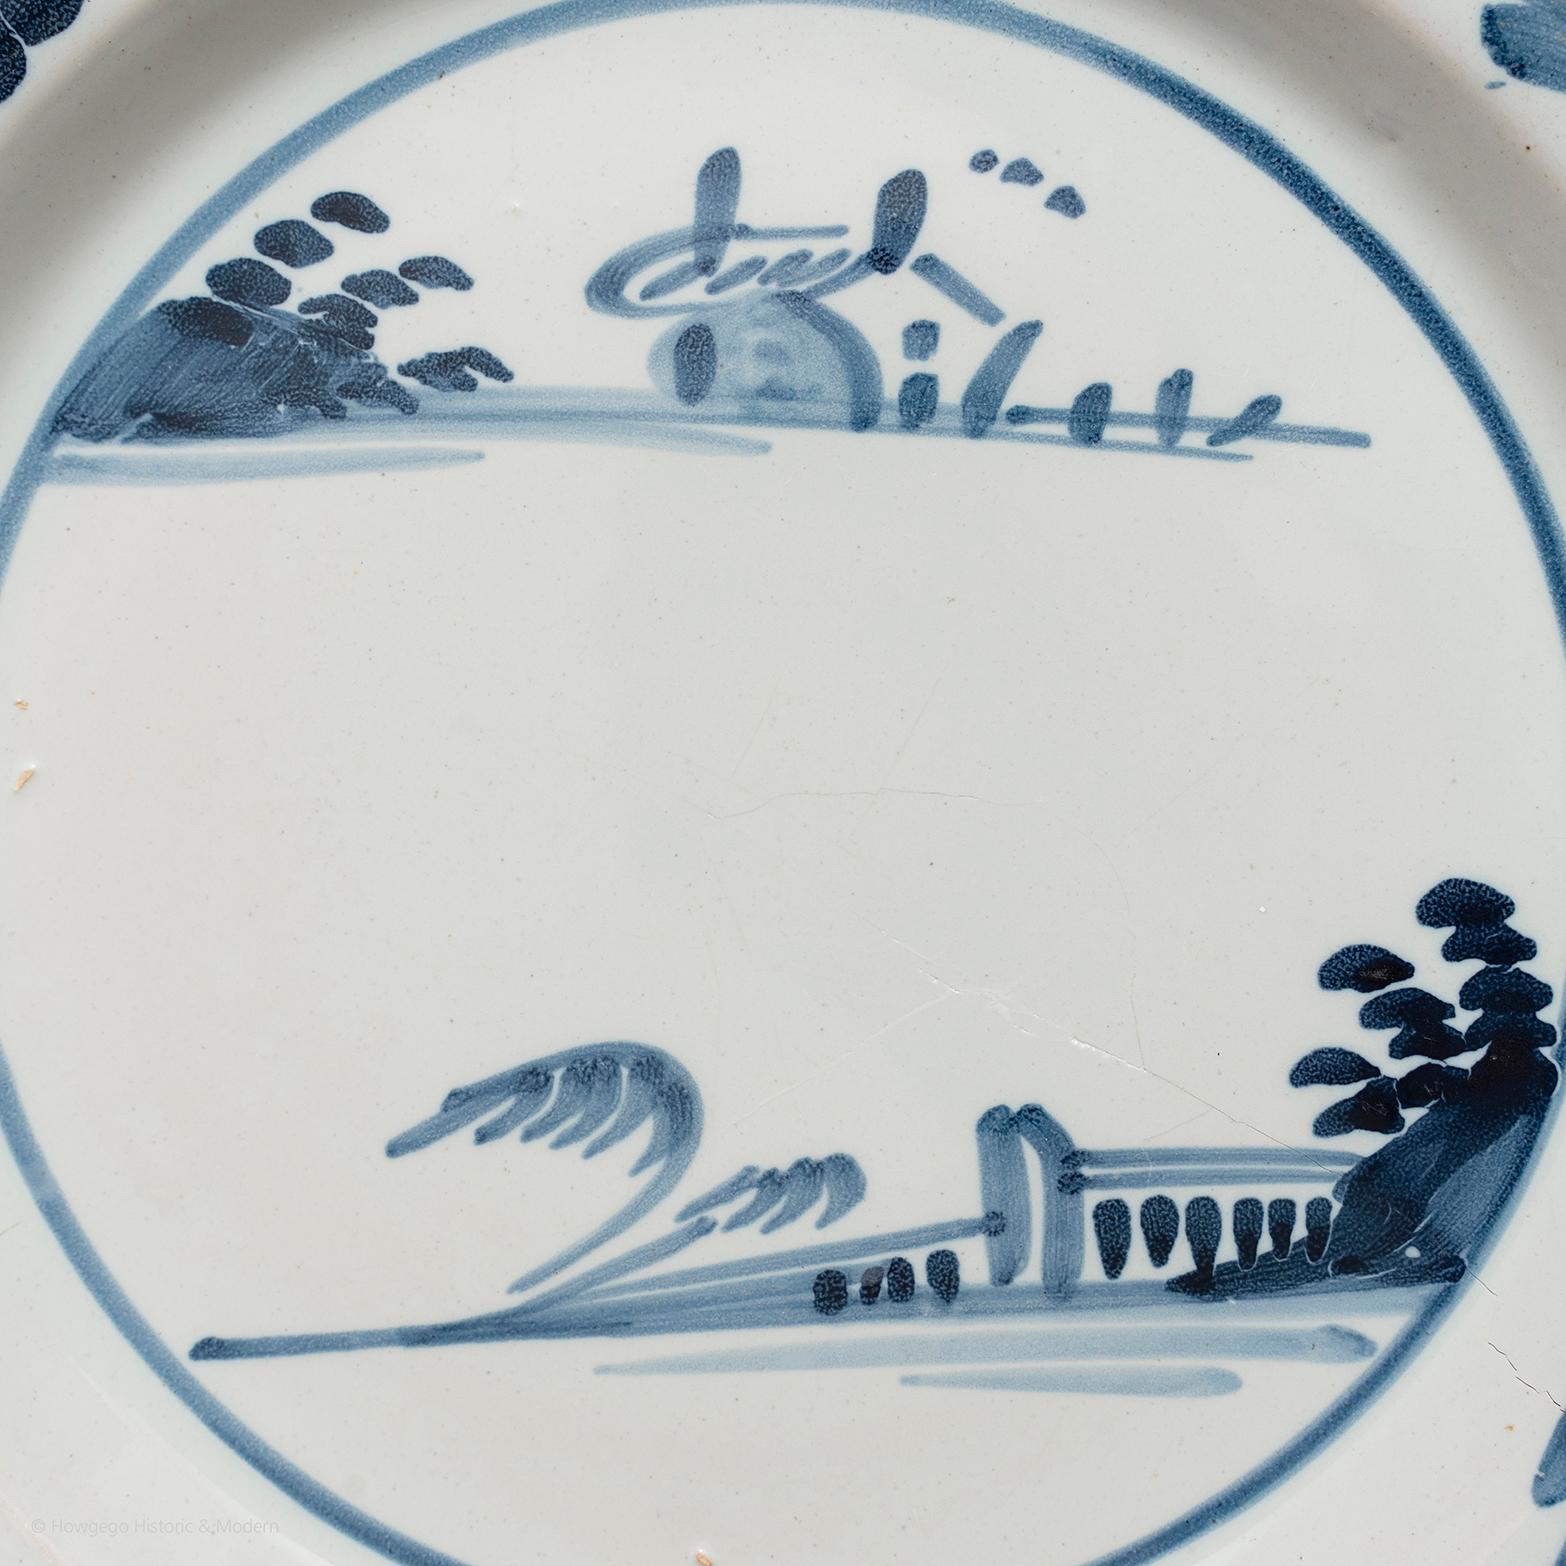 Plate delft London Chinoiserie Landschaft blau-weiße Keramik Durchmesser 22,5cm 9